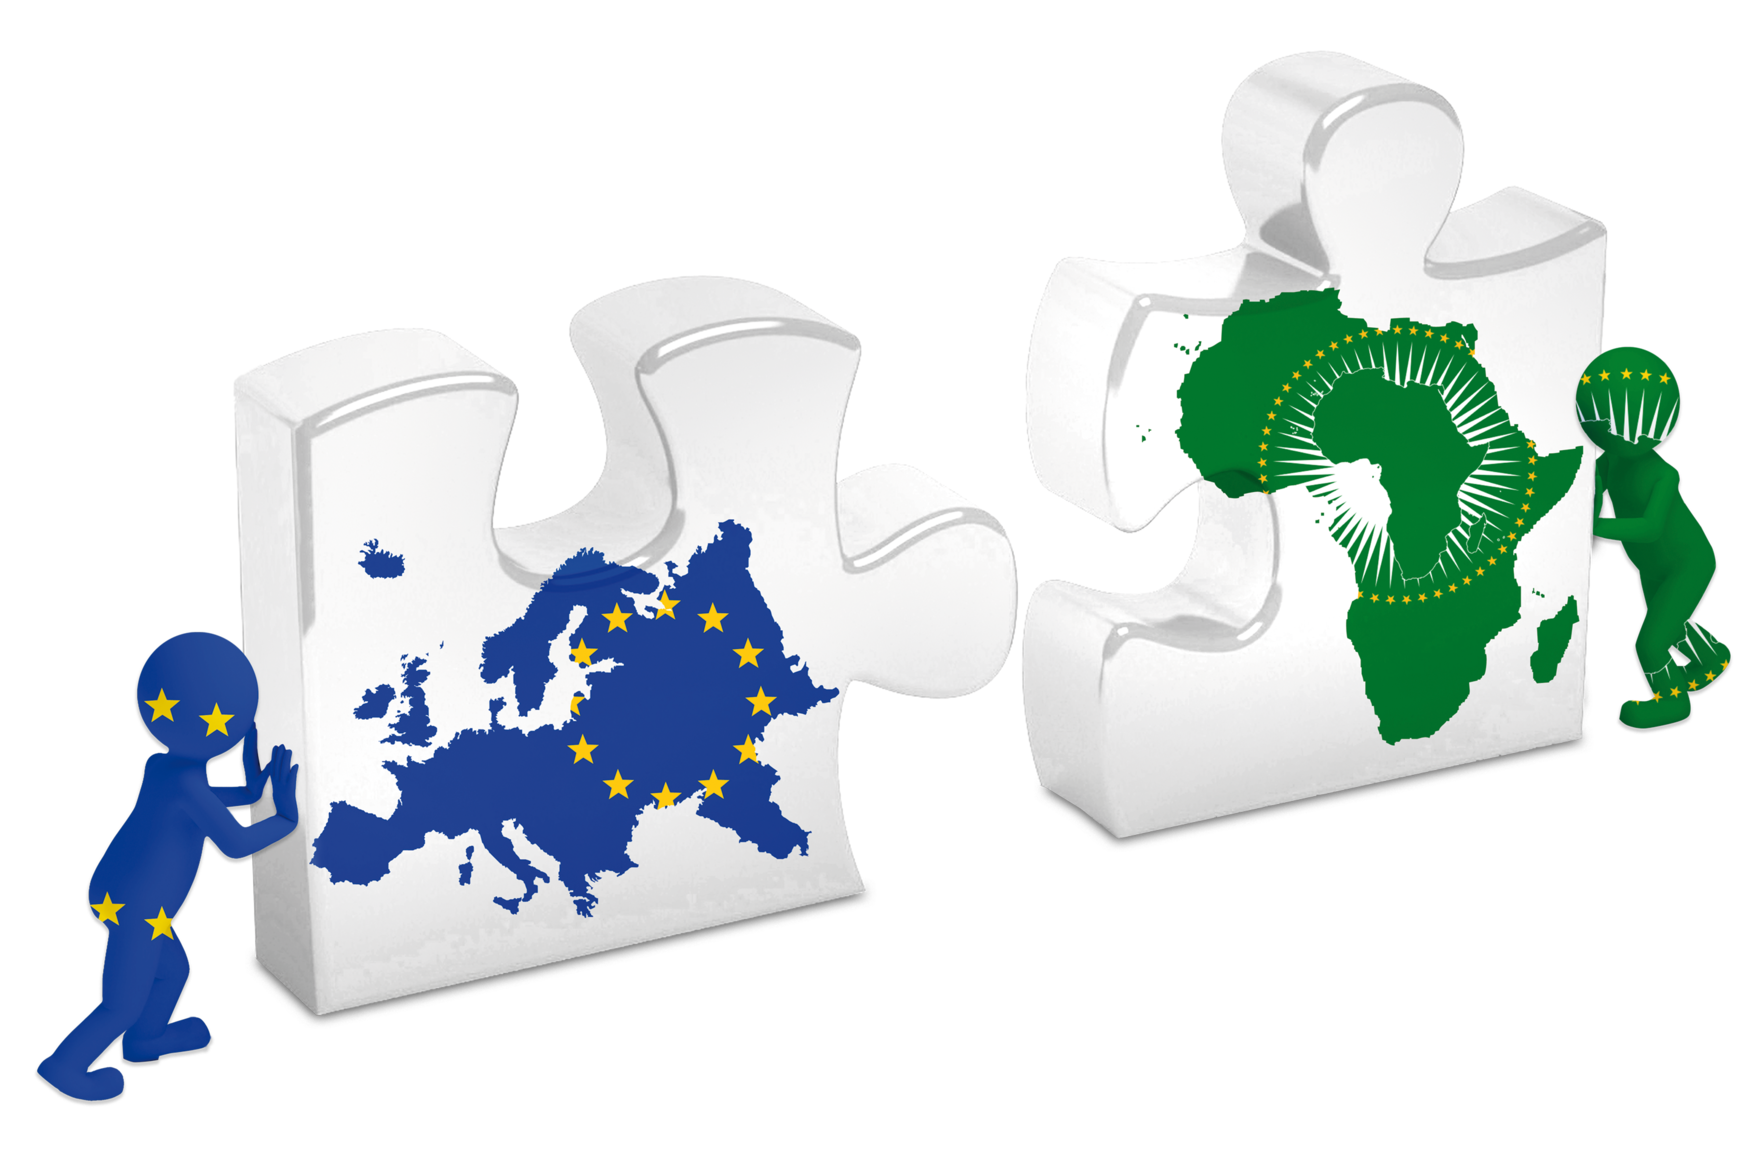 Symbolbild zwei einzelne Puzzleteile. Ein Puzzleteil mit dem Kontinent Afrika und eines mit dem Kontinent Europa. Sie werden von zwei Männchen zueinander geschoben, sodass sie passen würden.